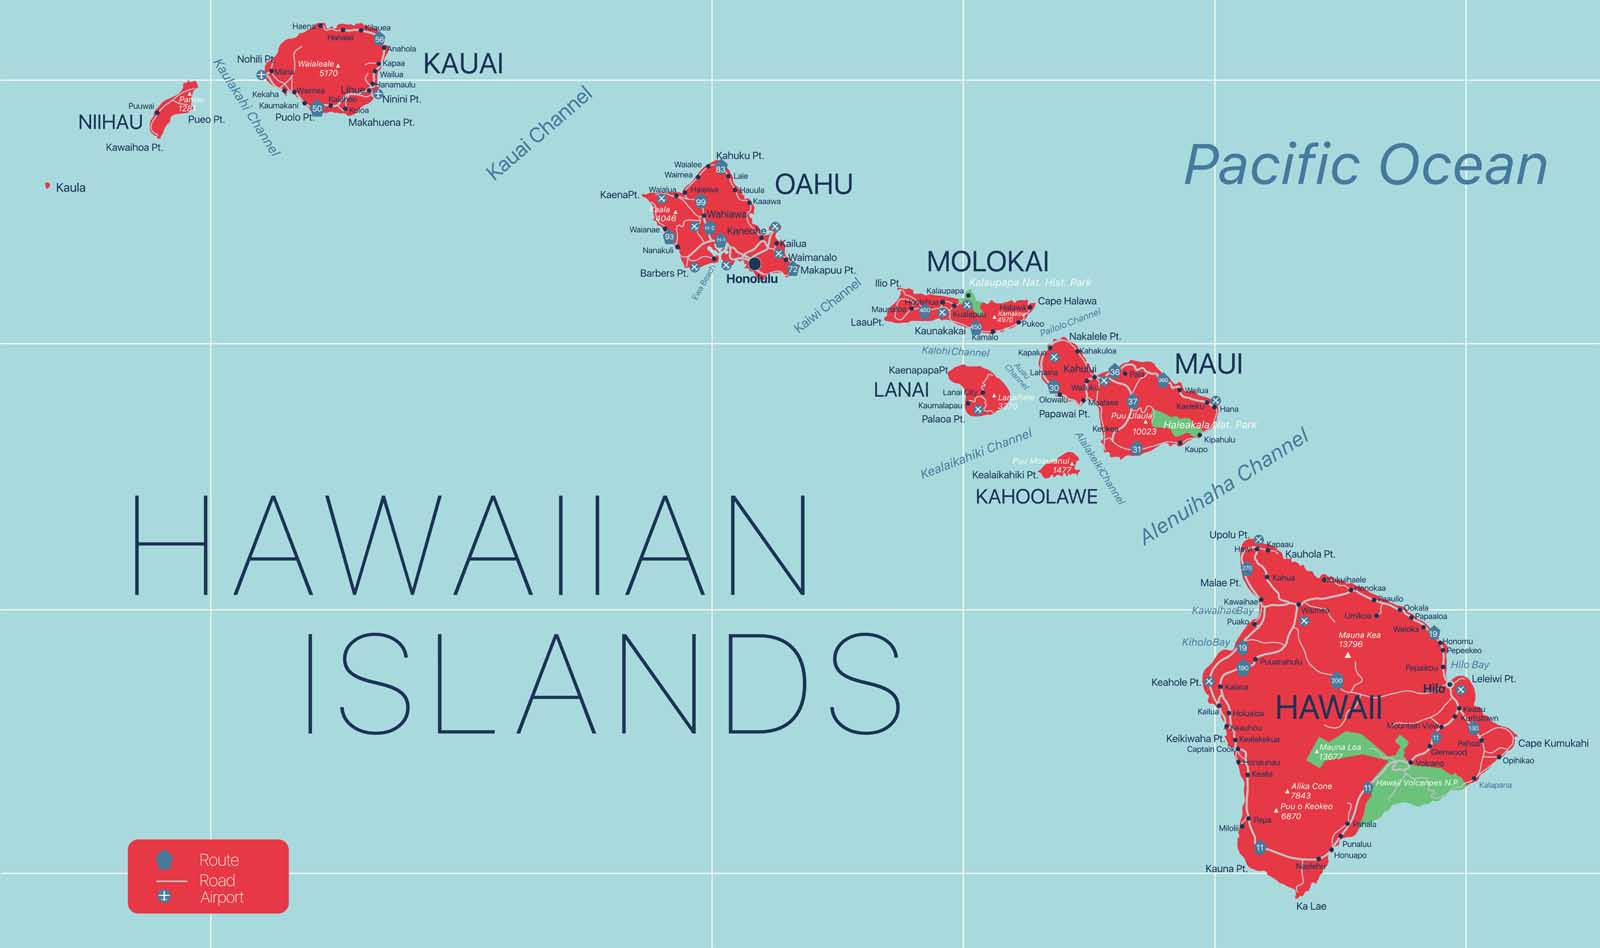 Hawaiian island facts Archipelago